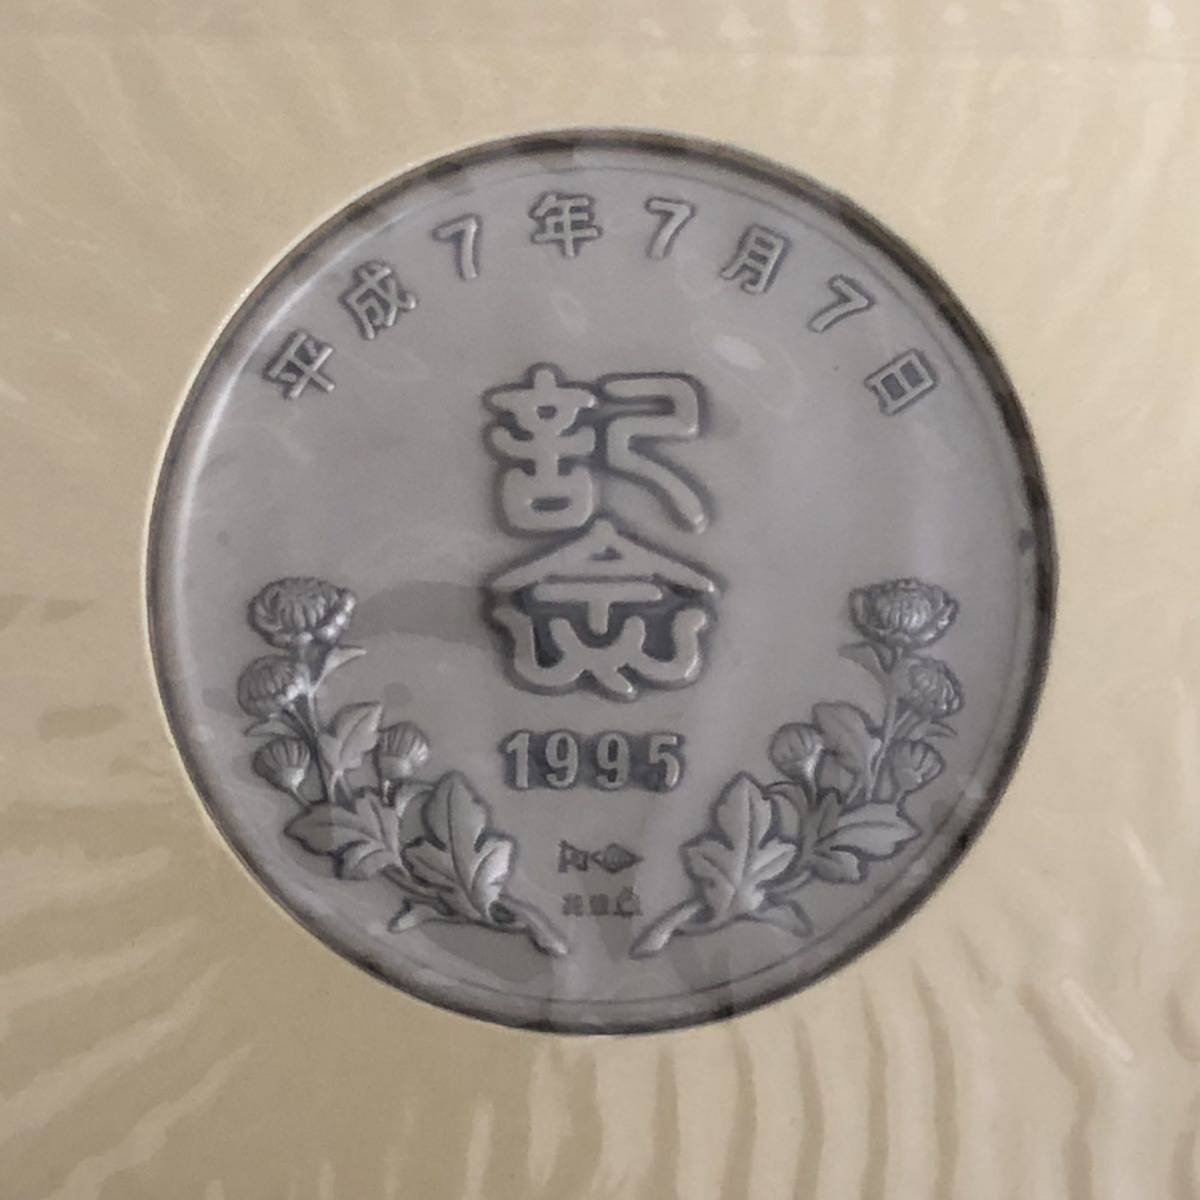 平成7年7月7日 記念メダルと記念カバーの特別セット 純銀製 松本微章工業株式会社_画像6